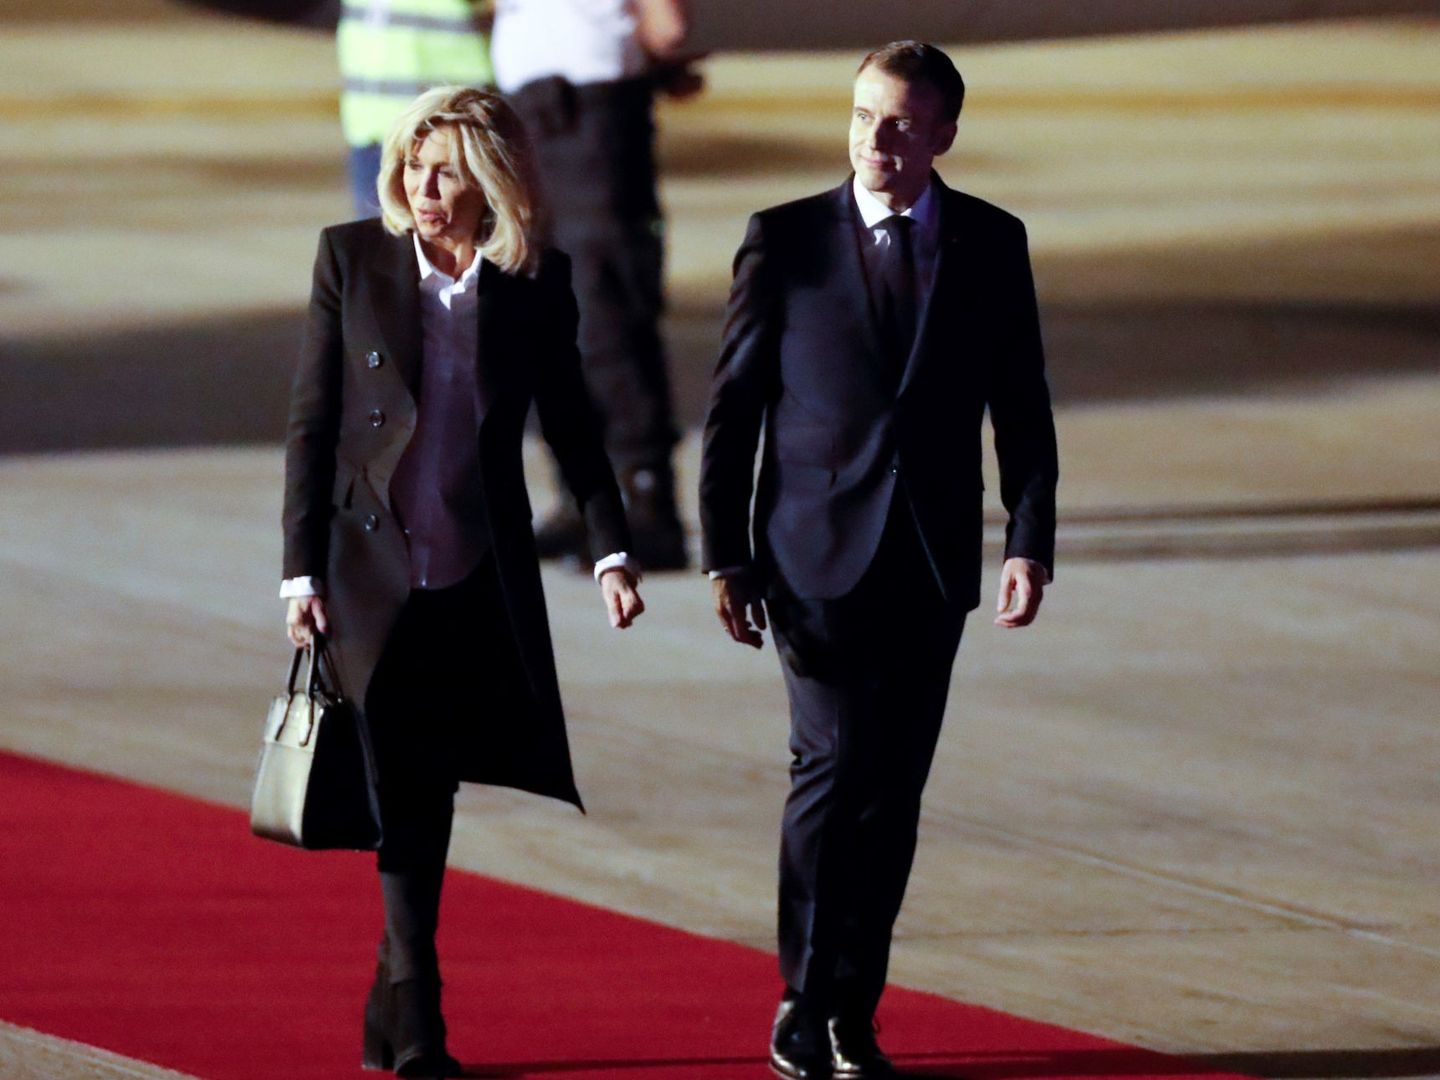 El matrimonio Macron en la cumbre del G-20. (EFE)